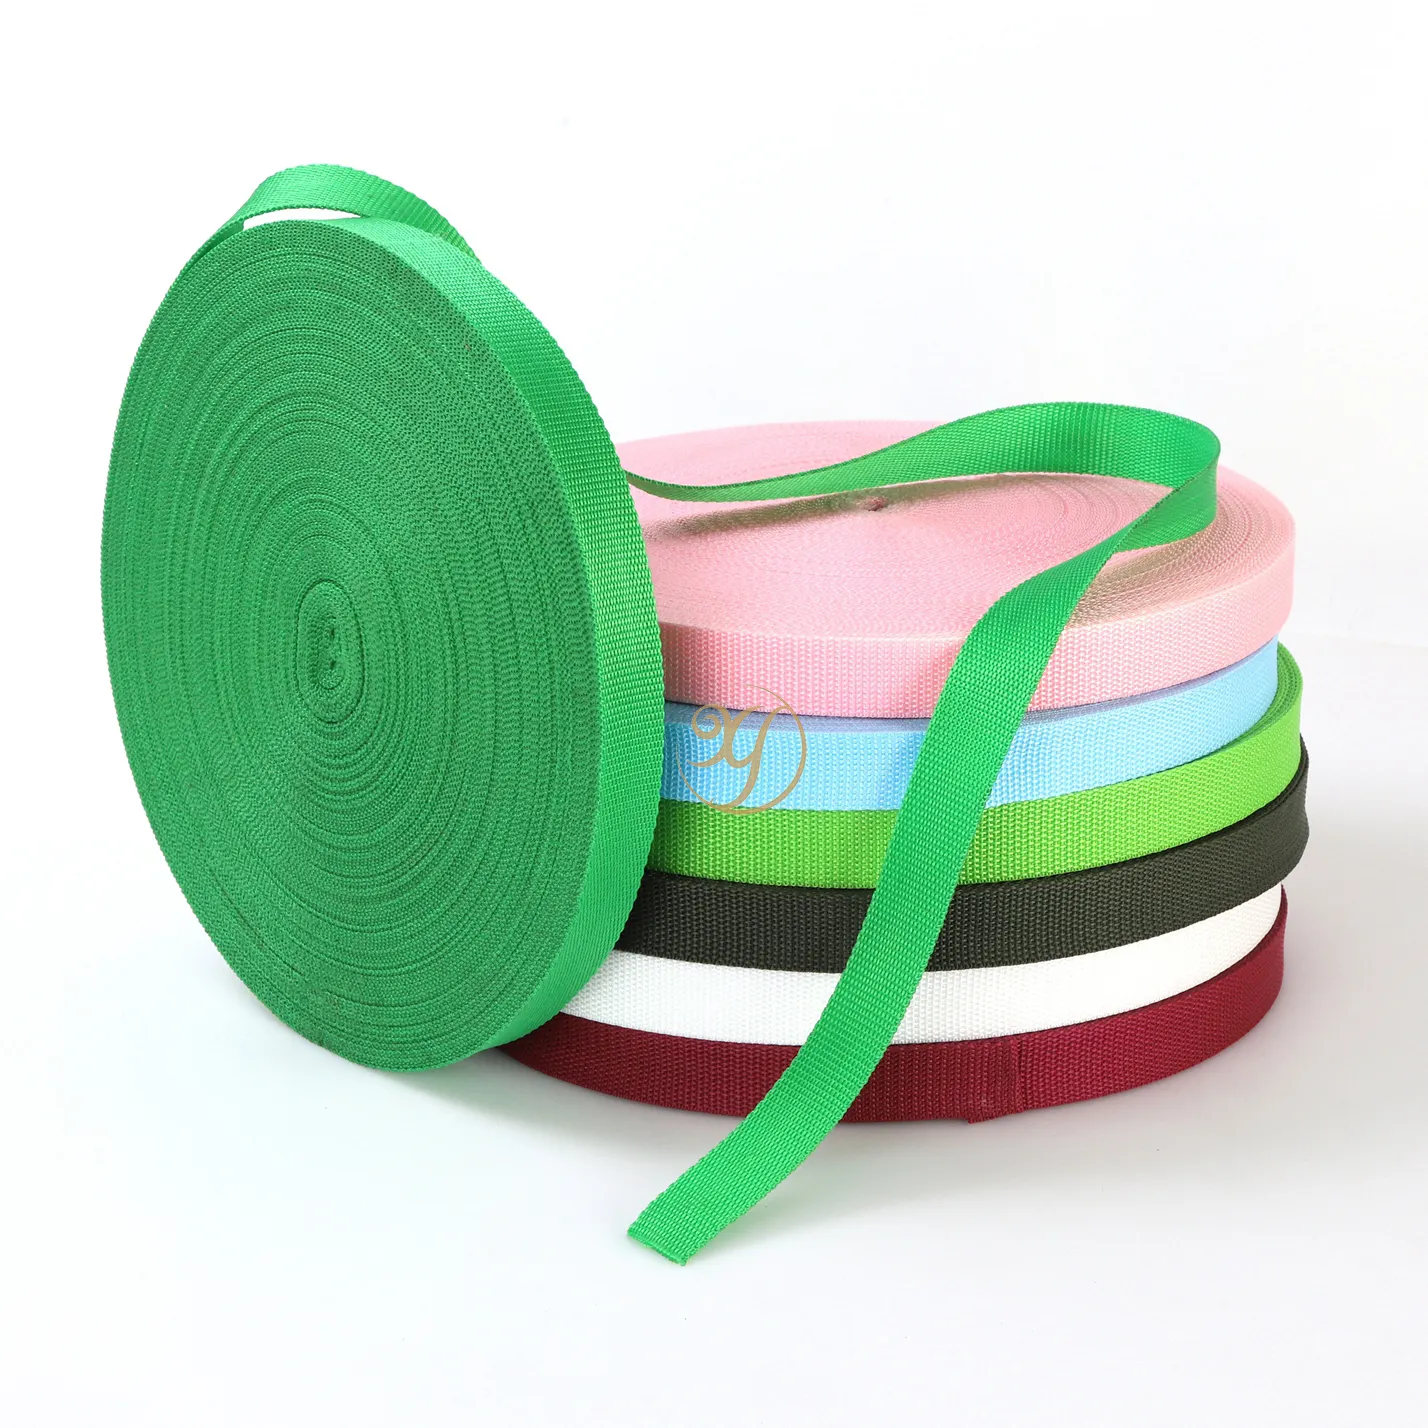 Cintura in tessuto multicolore con fettuccia ad alta resistenza in materiale PP